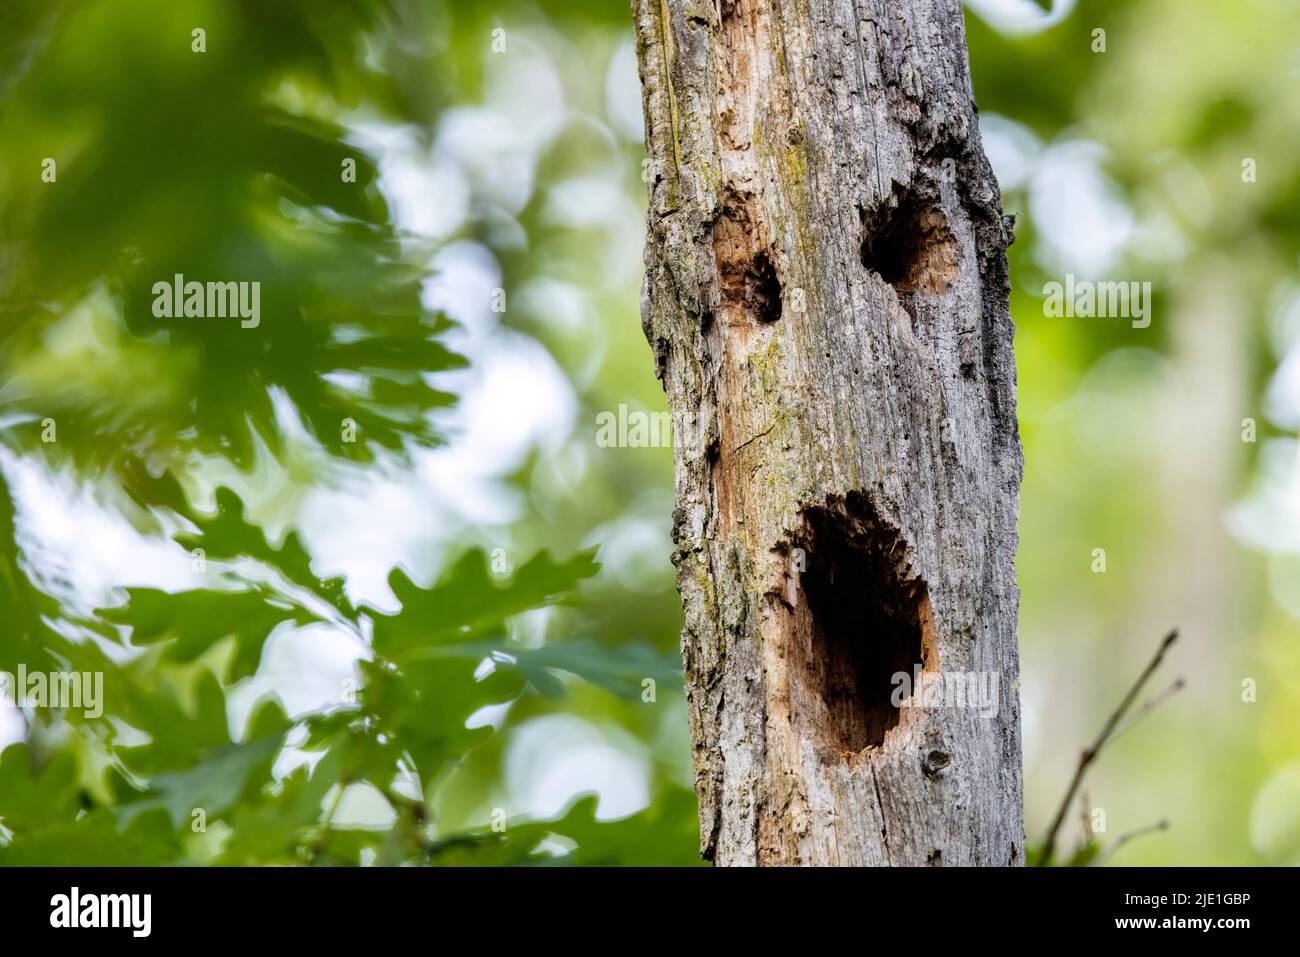 Beängstigendes Gesicht im Baumstamm - Brevard, North Carolina, USA Stockfoto